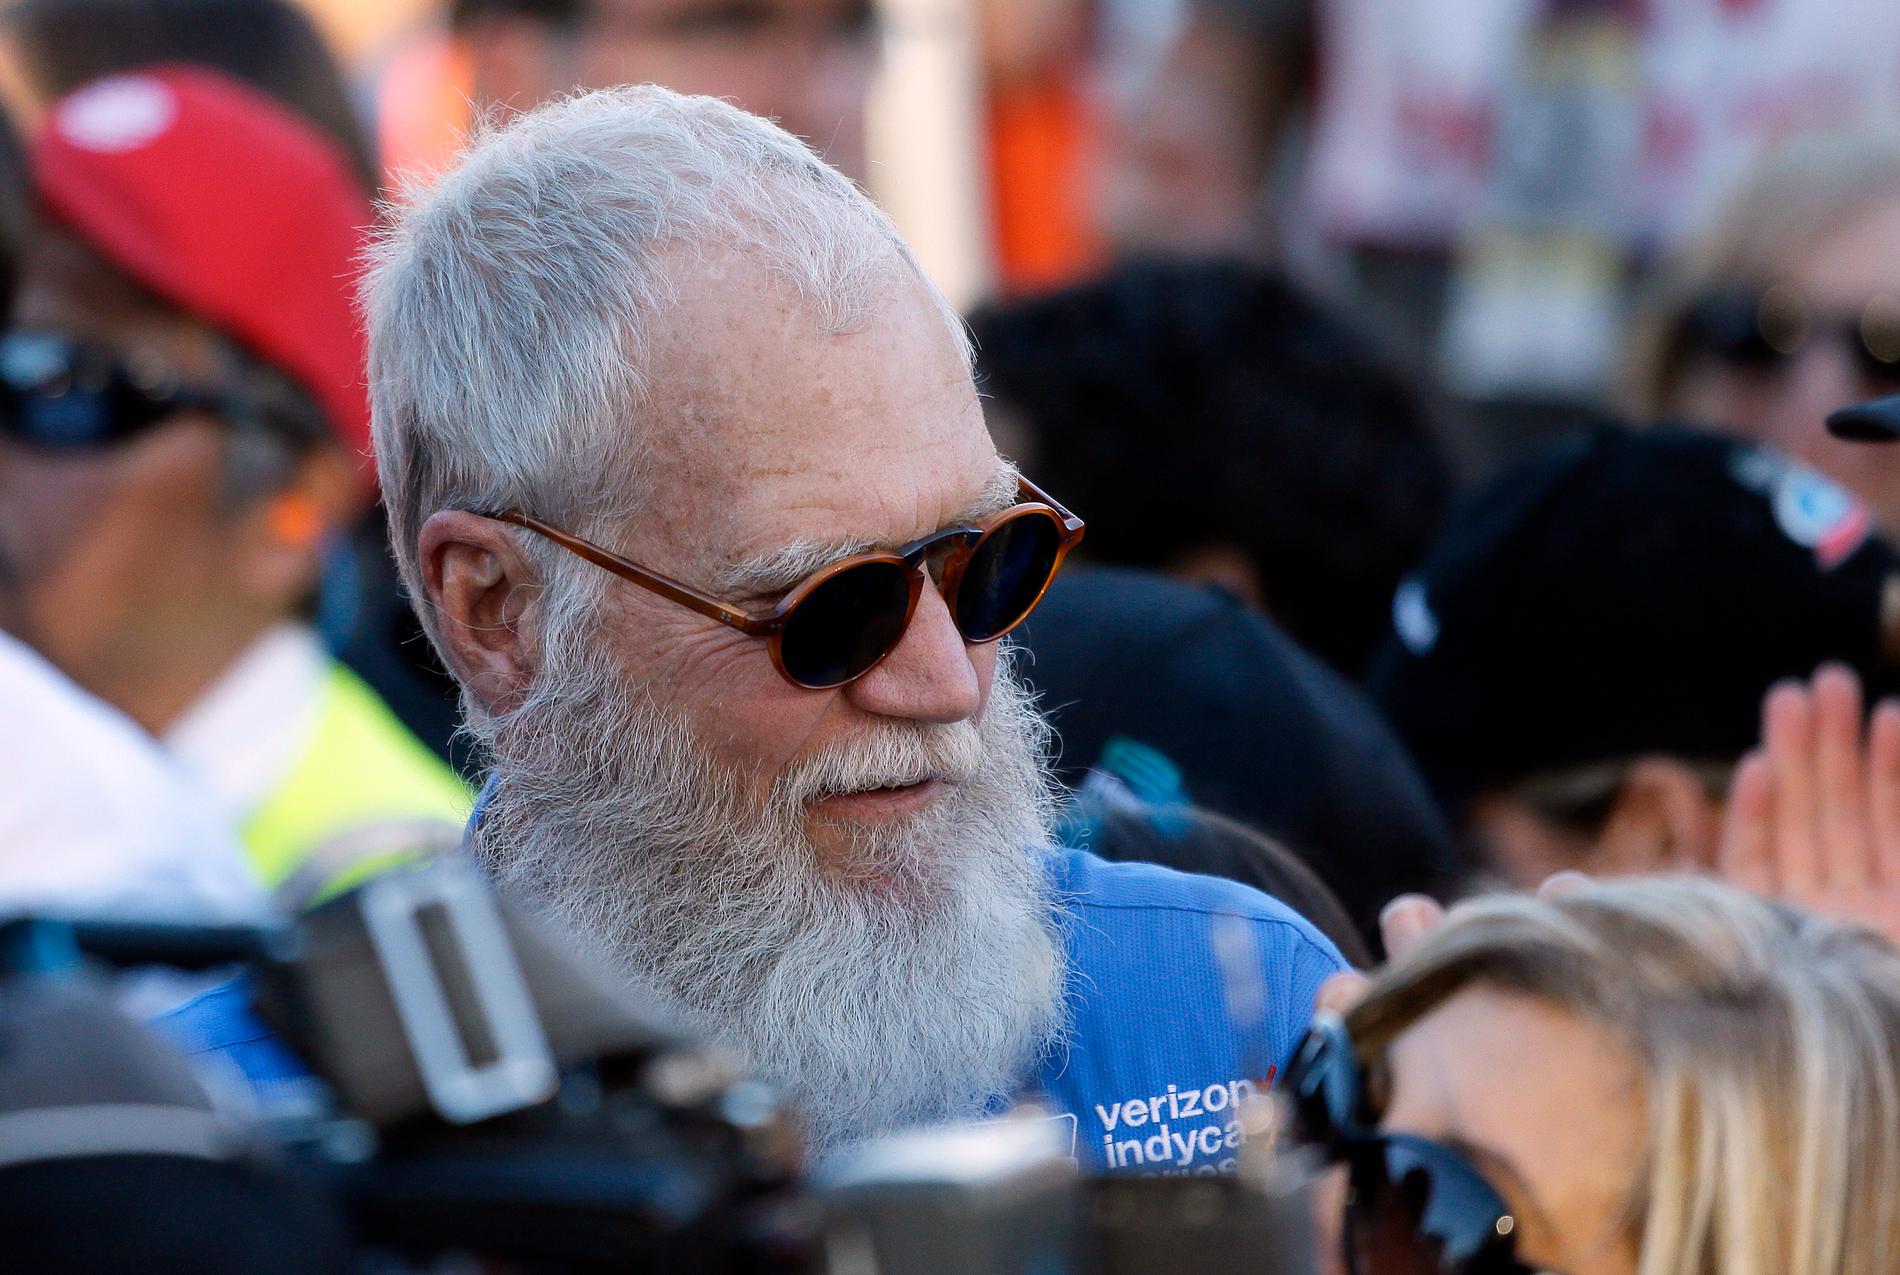 Gamla medarbetare till David Letterman uppger att hans personlighet inte var något att skratta åt